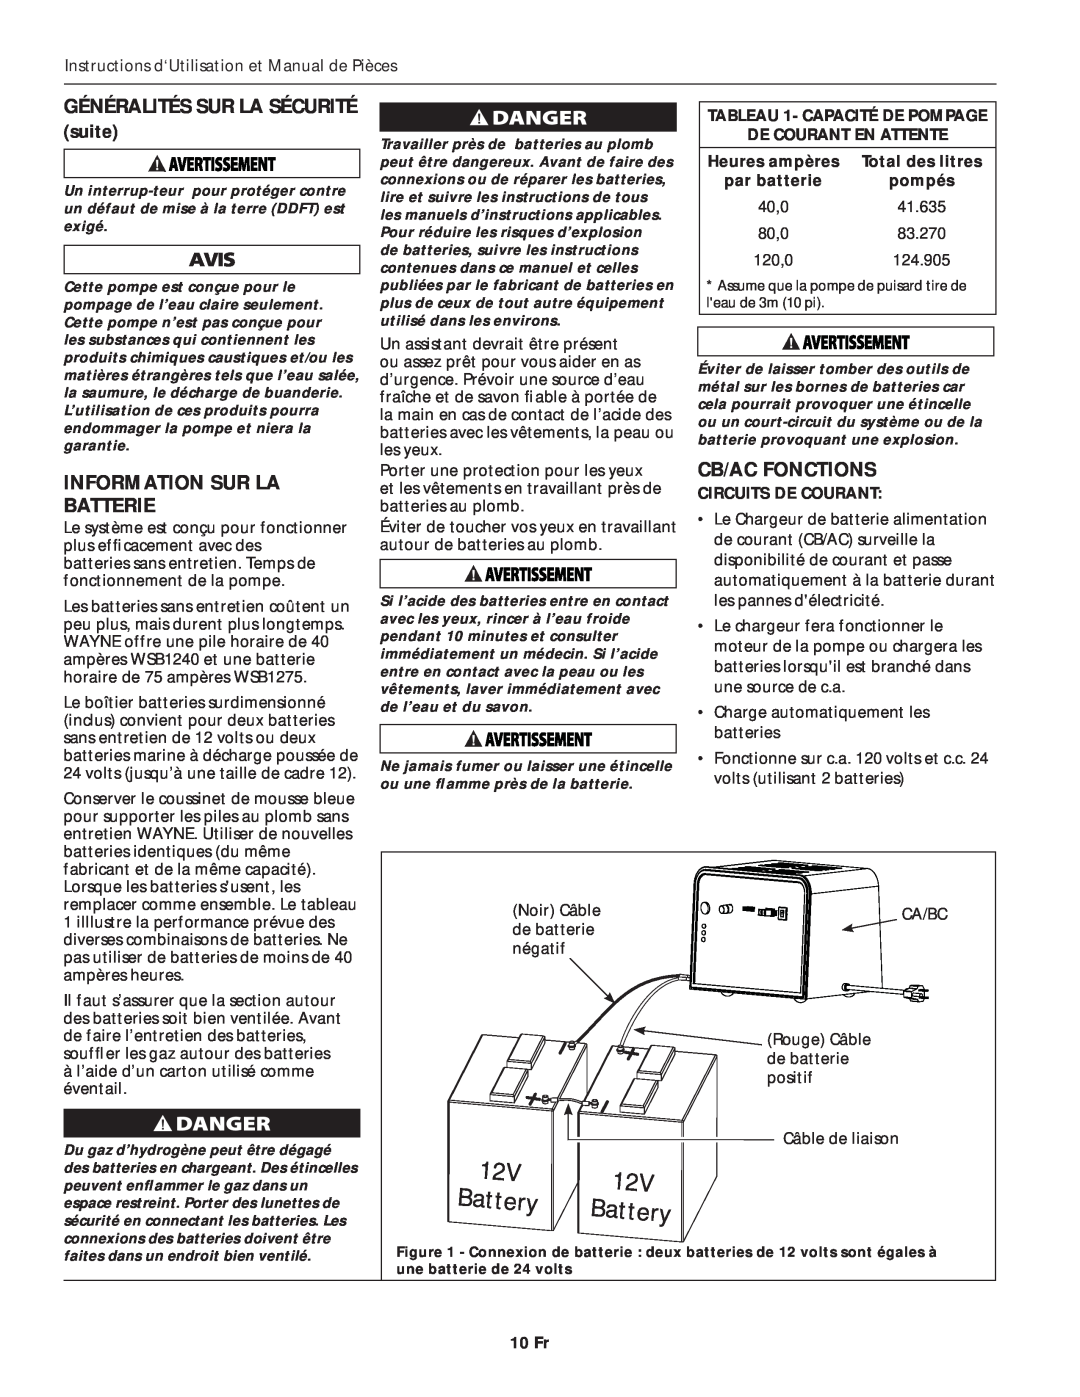 Wayne ESP45 Information Sur La Batterie, Cb/Ac Fonctions, suite, TABLEAU 1- CAPACITÉ DE POMPAGE, De Courant En Attente 